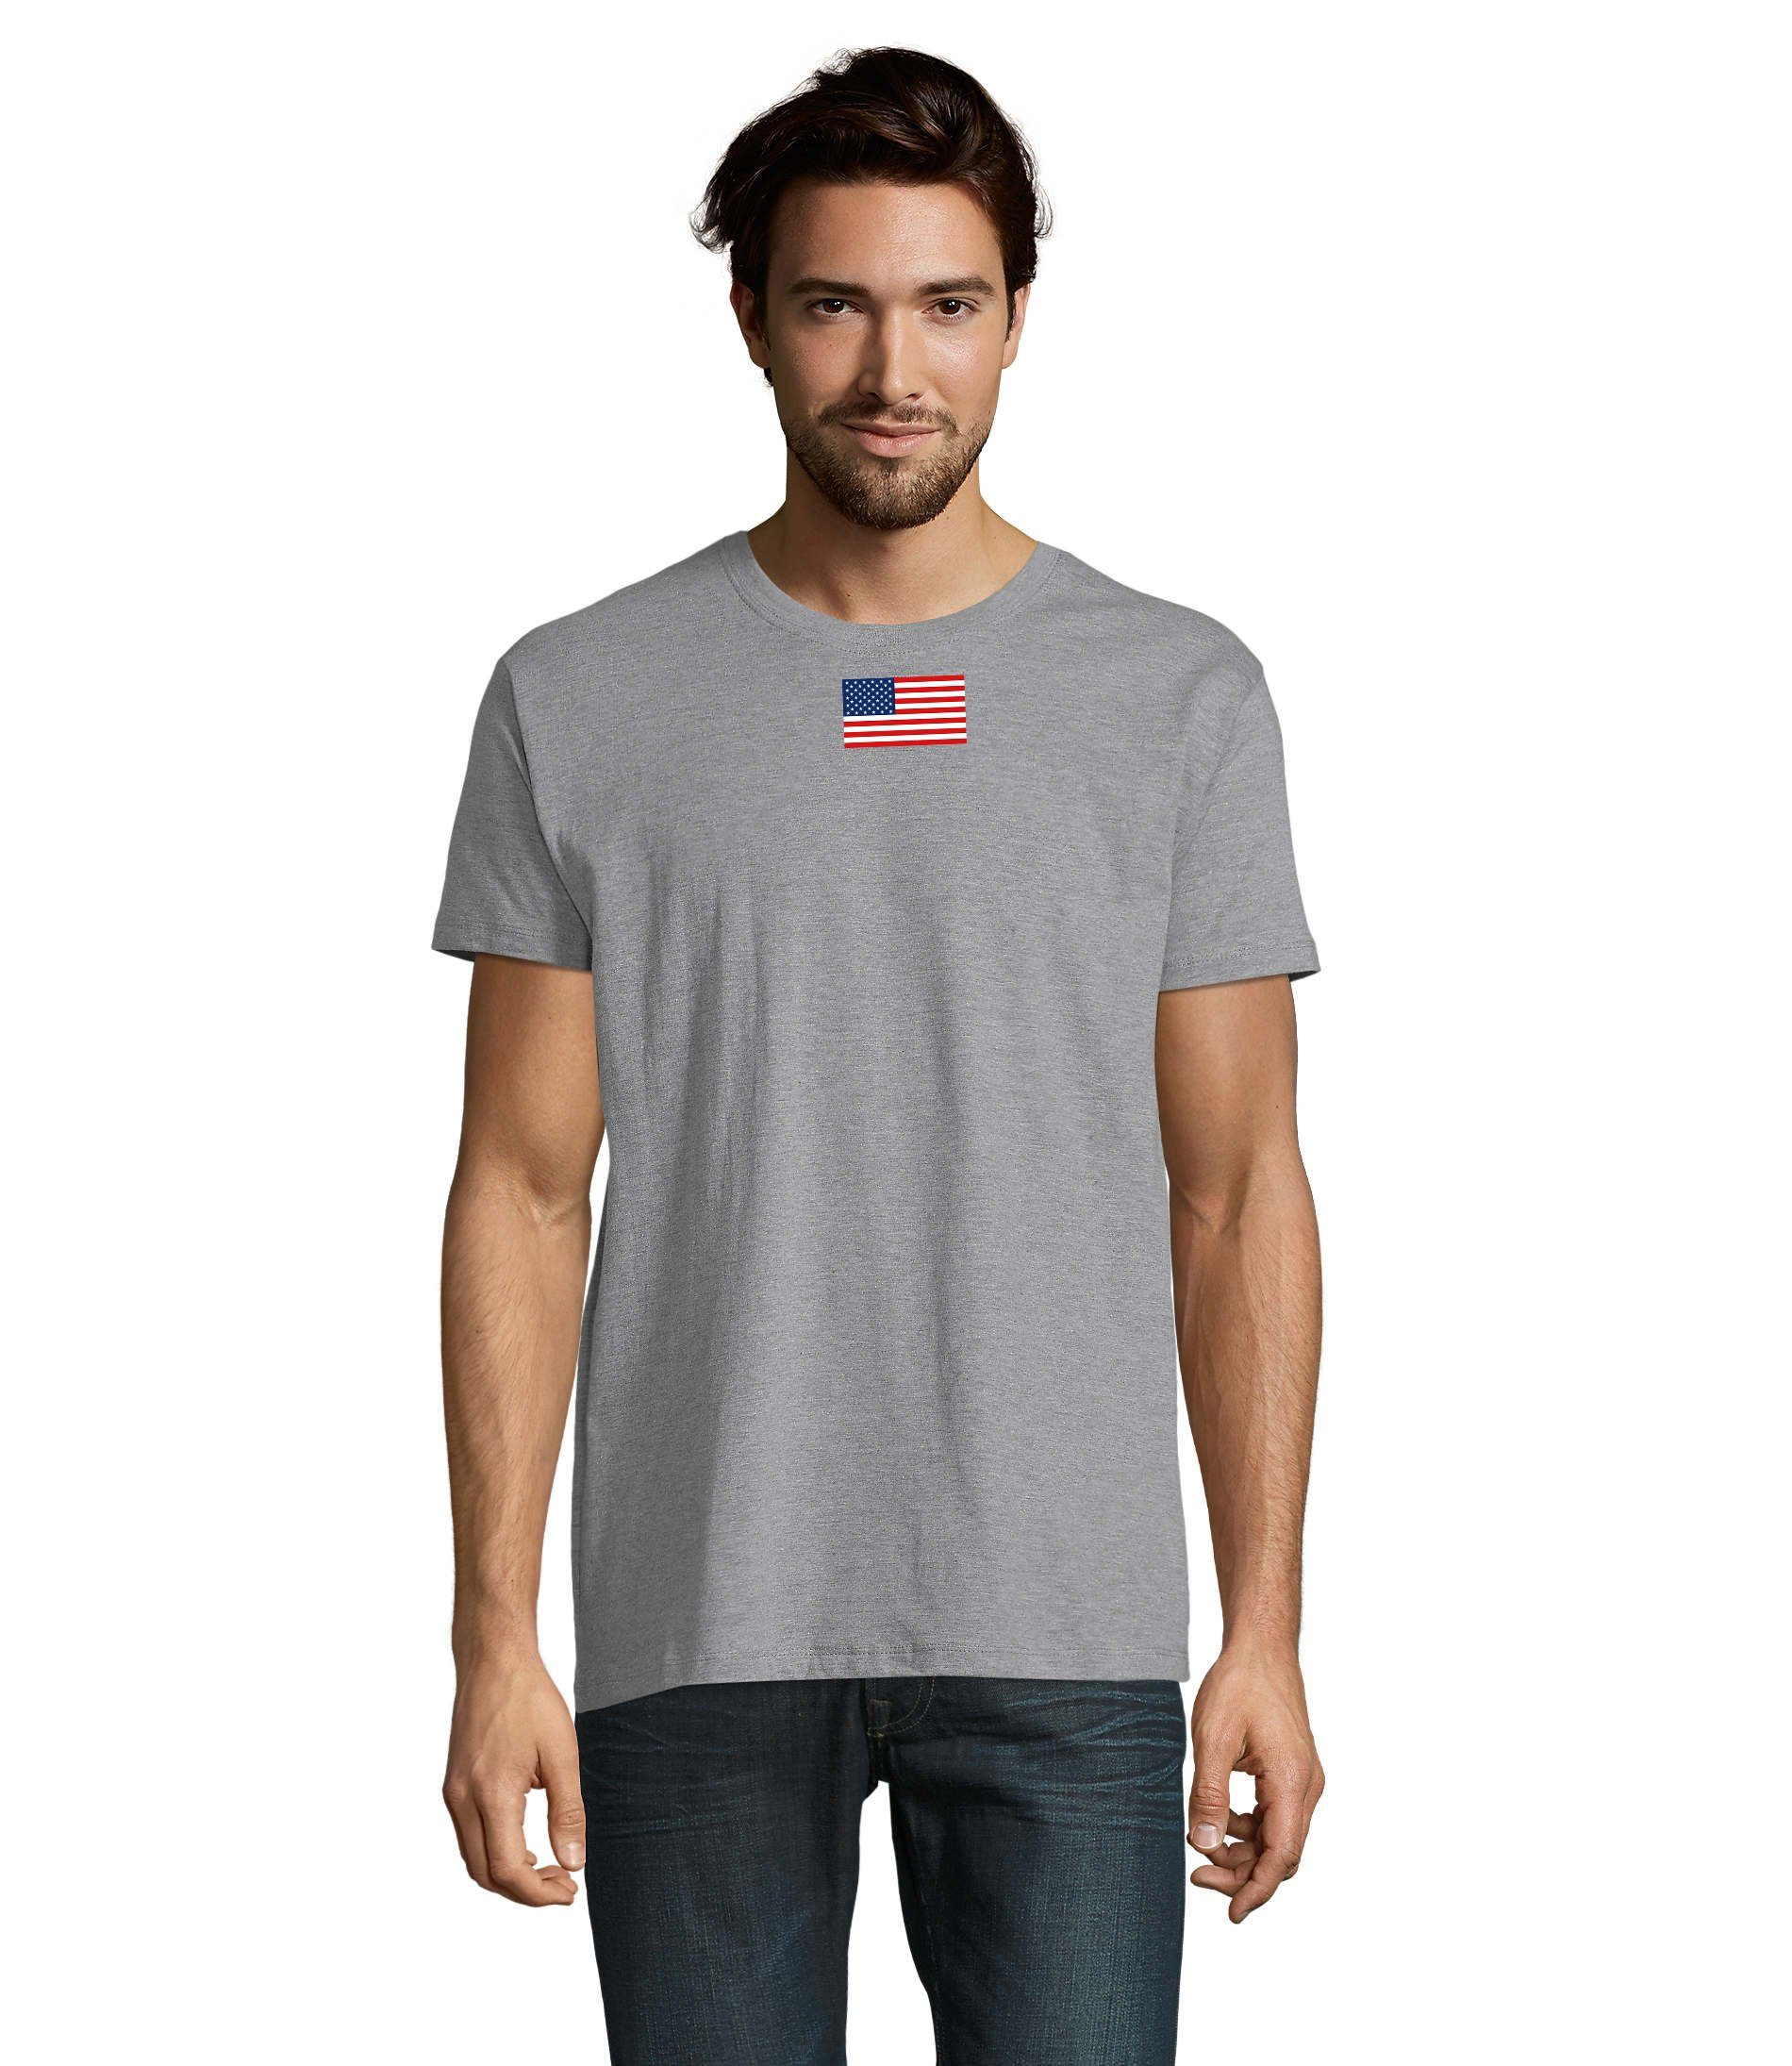 Blondie von T-Shirt Amerika Brownie & Force Herren Staaten Grau USA Air Vereinigte Army Nartion